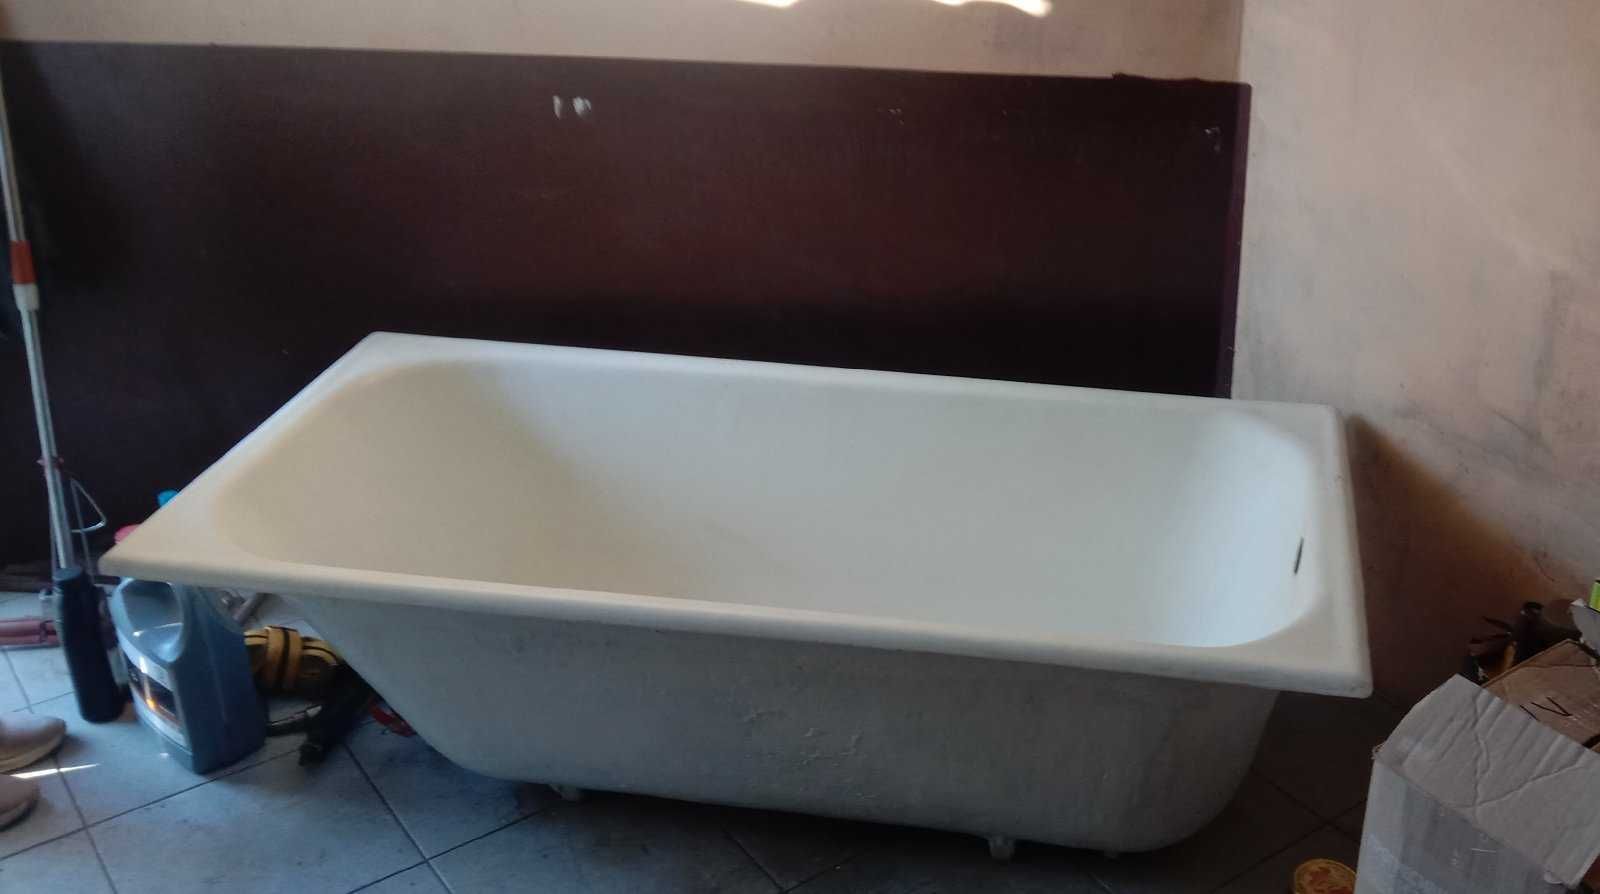 Чавунна ванна б\в стандартна 1.50 х 0,70 в гарному стані